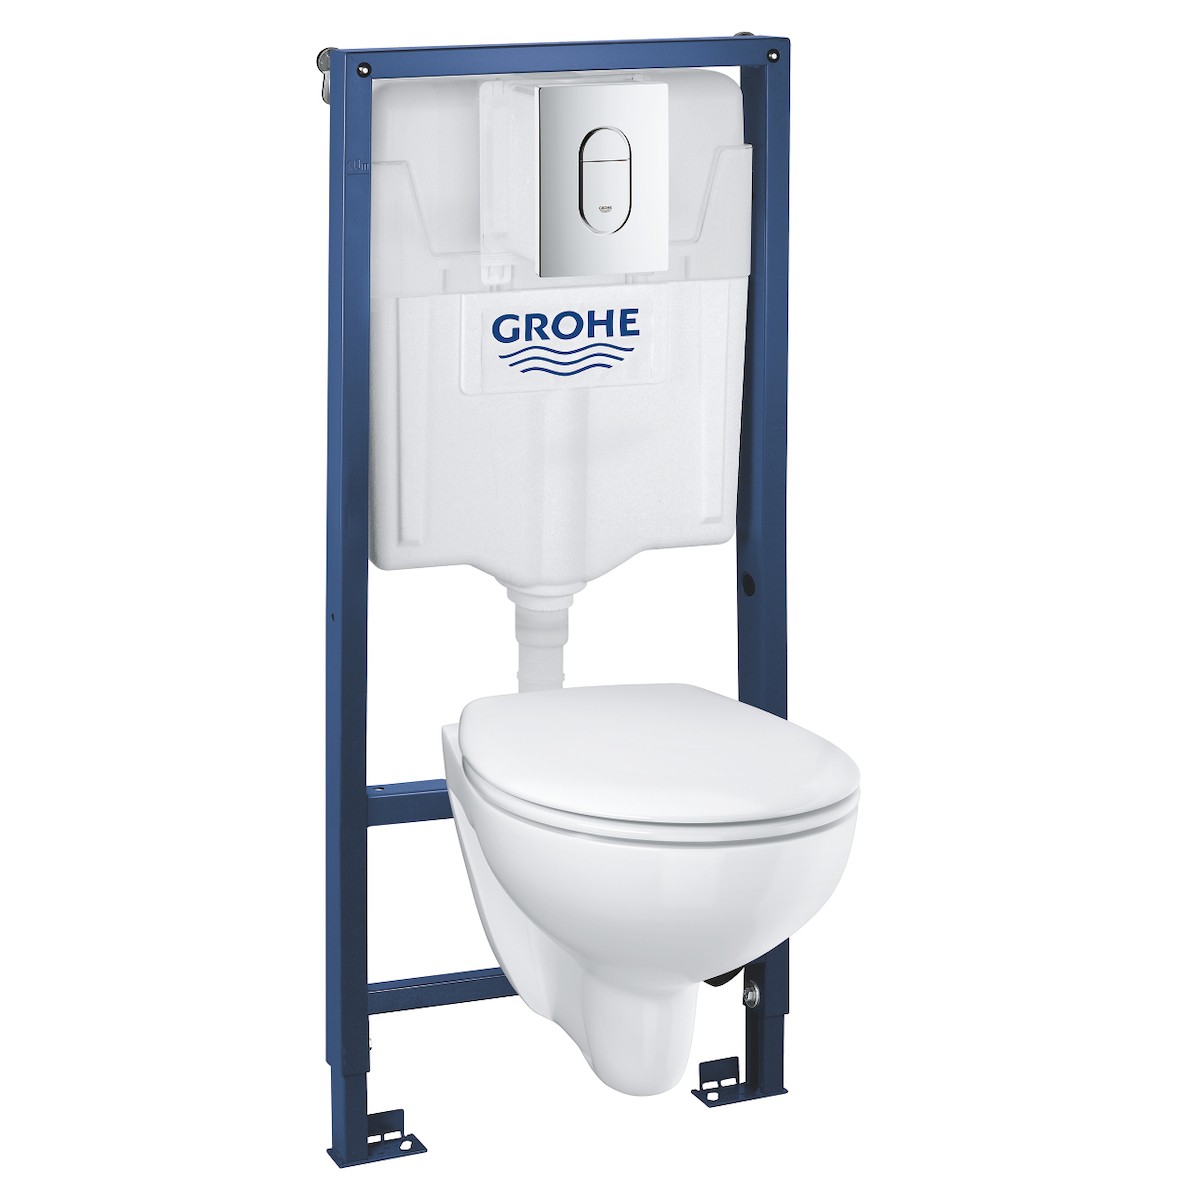 Cenově zvýhodněný závěsný WC set Grohe do lehkých stěn / předstěnová montáž+ WC Grohe Bau Ceramic G394180001 Grohe